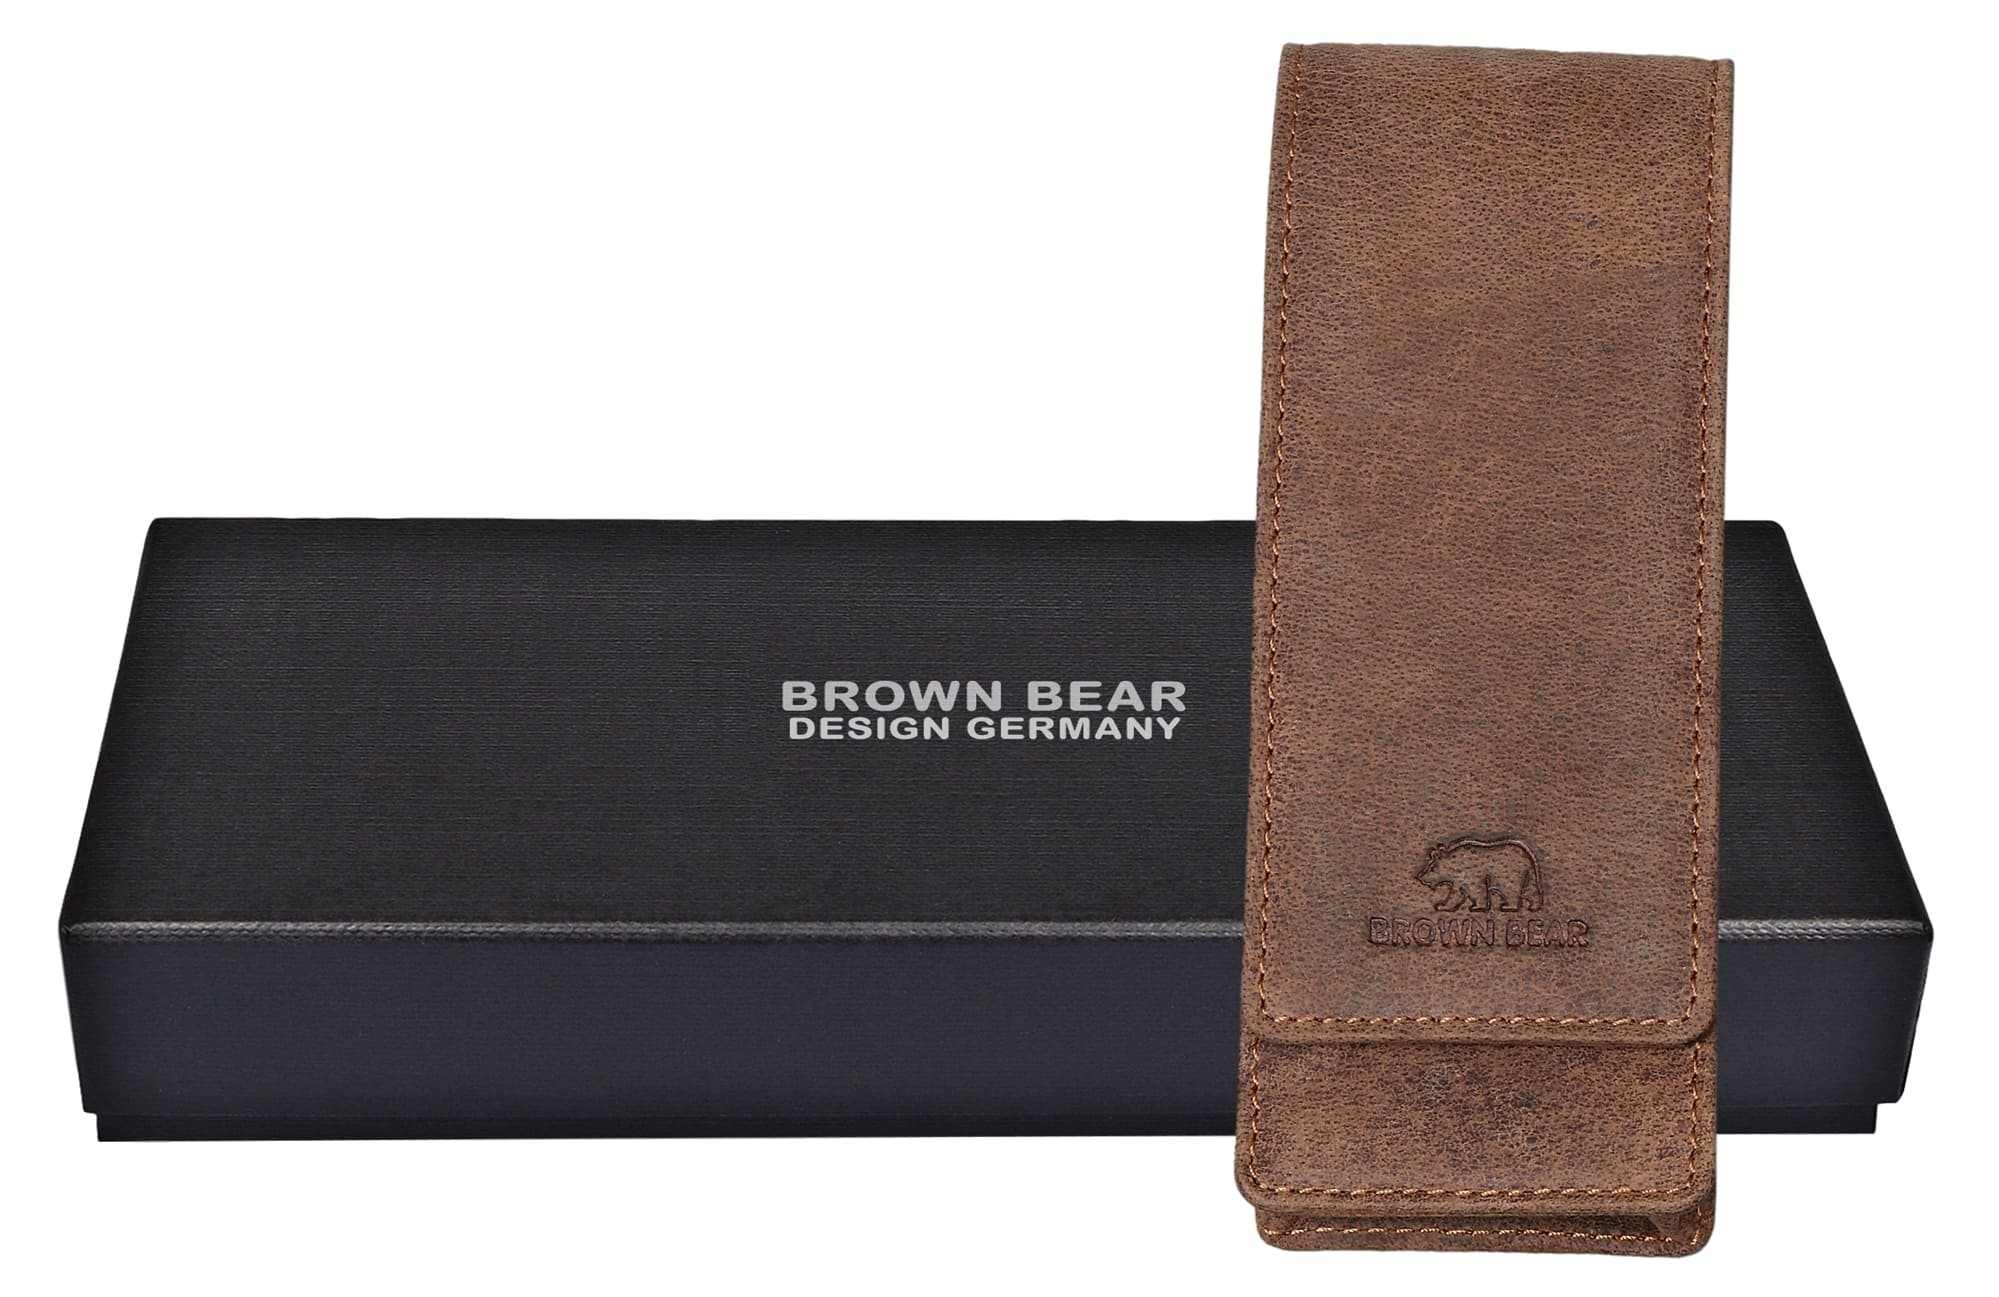 Brown Bear Golf 80 - Fülleretui für drei Stifte Braun Vintage